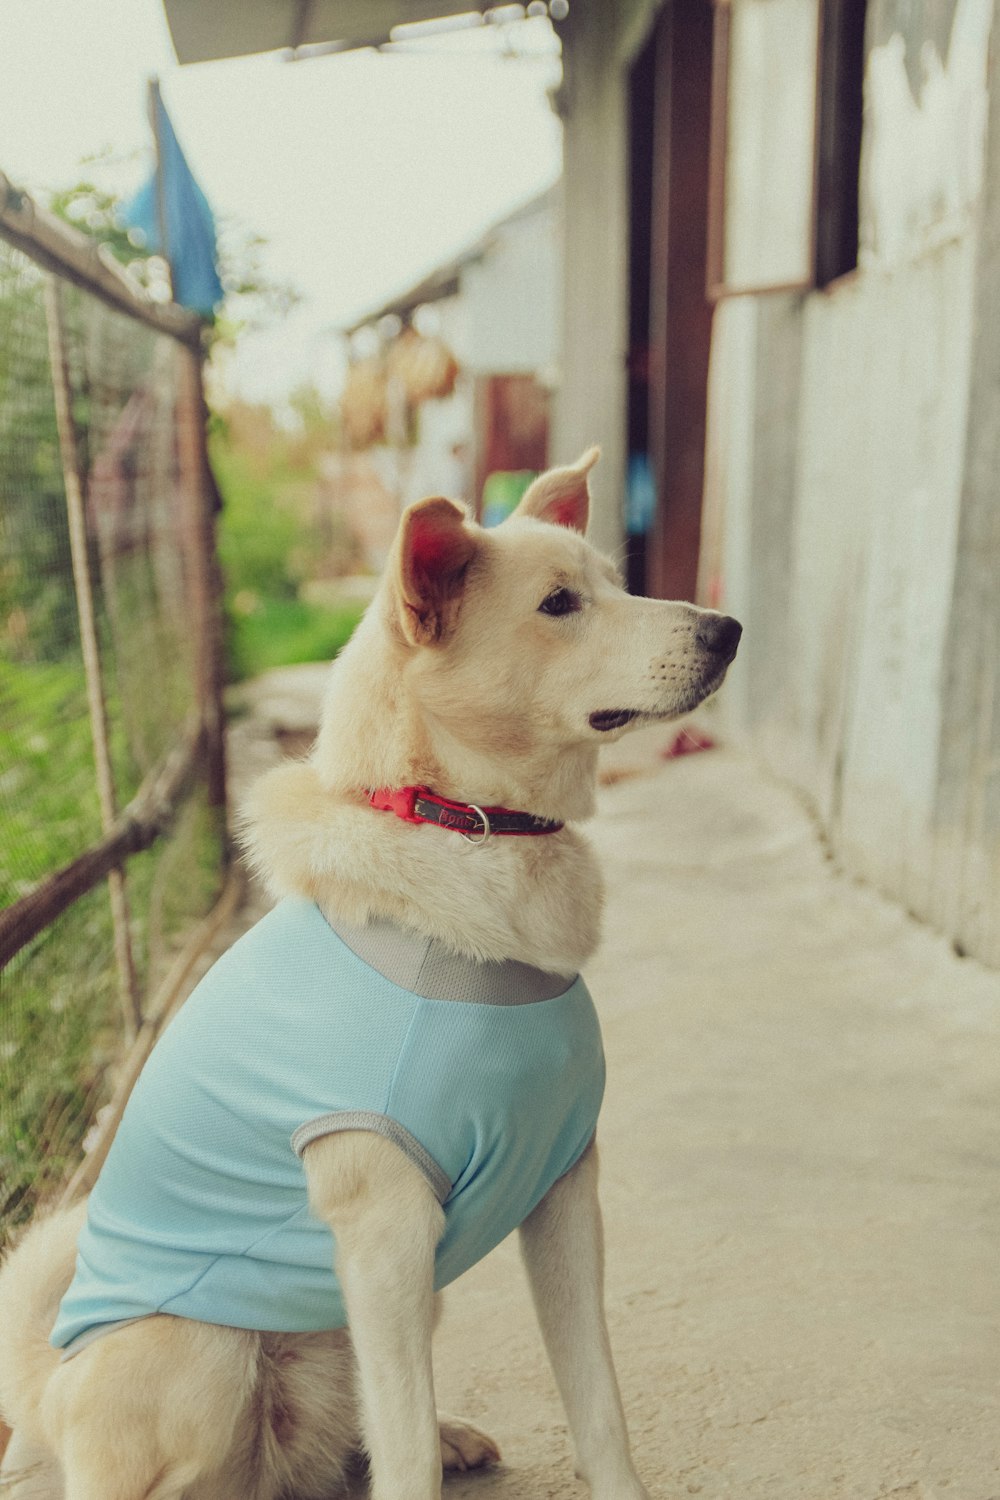 a dog wearing a blue shirt